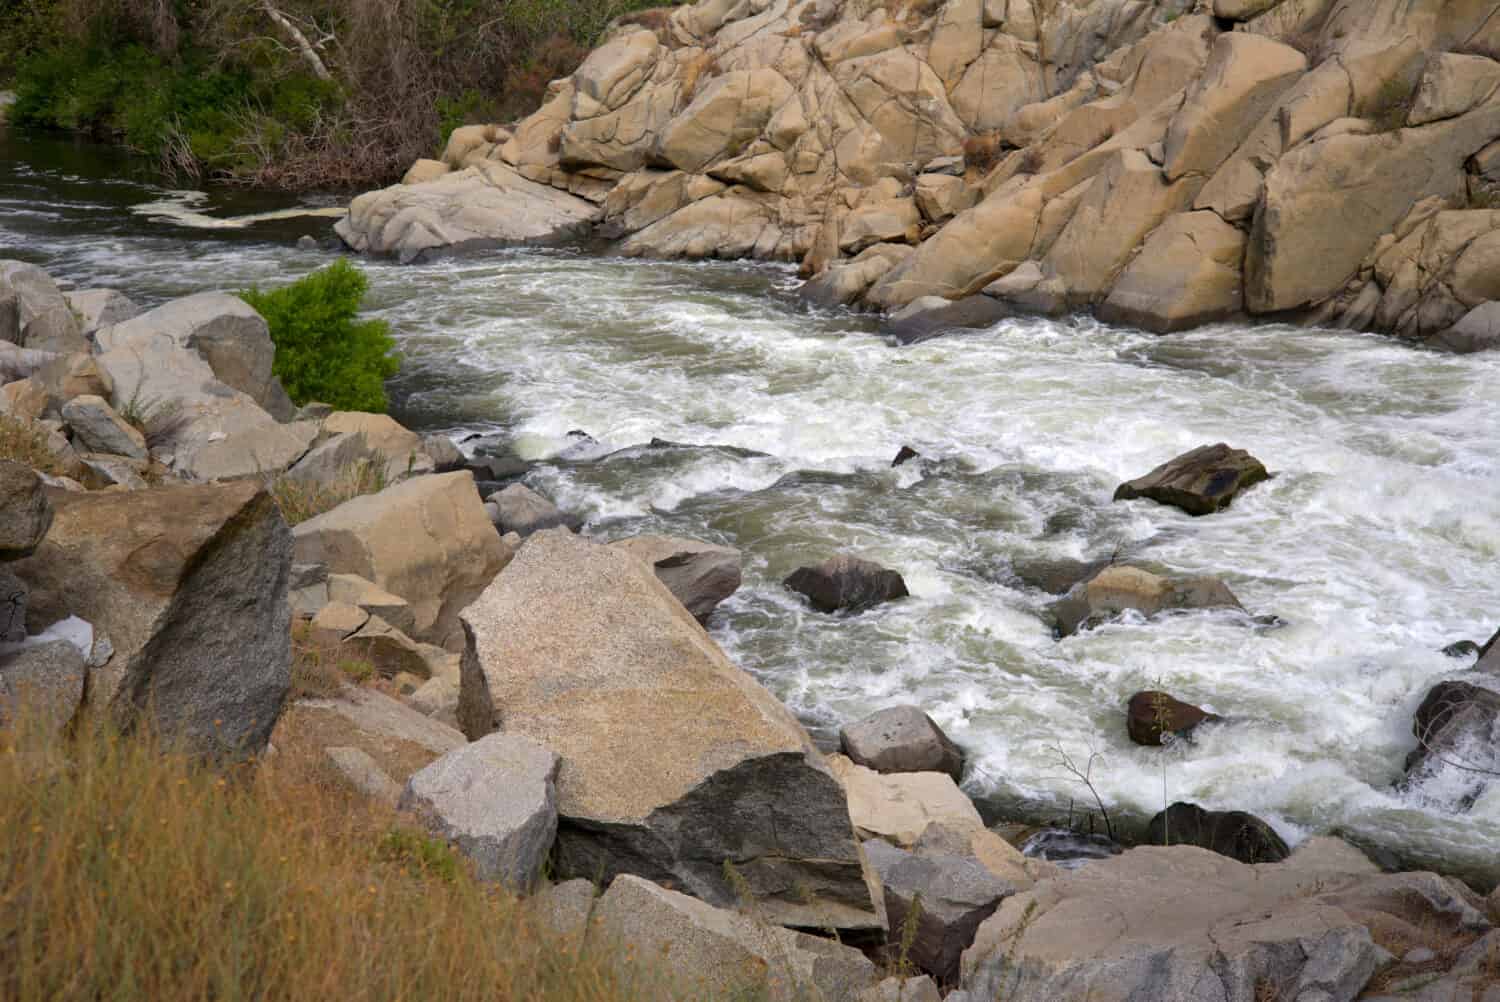 Il fiume Kern, un'attrazione turistica e ricreativa, a questo punto diventa selvaggio e infido, un pericolo sia per i bagnanti che per i navigatori.